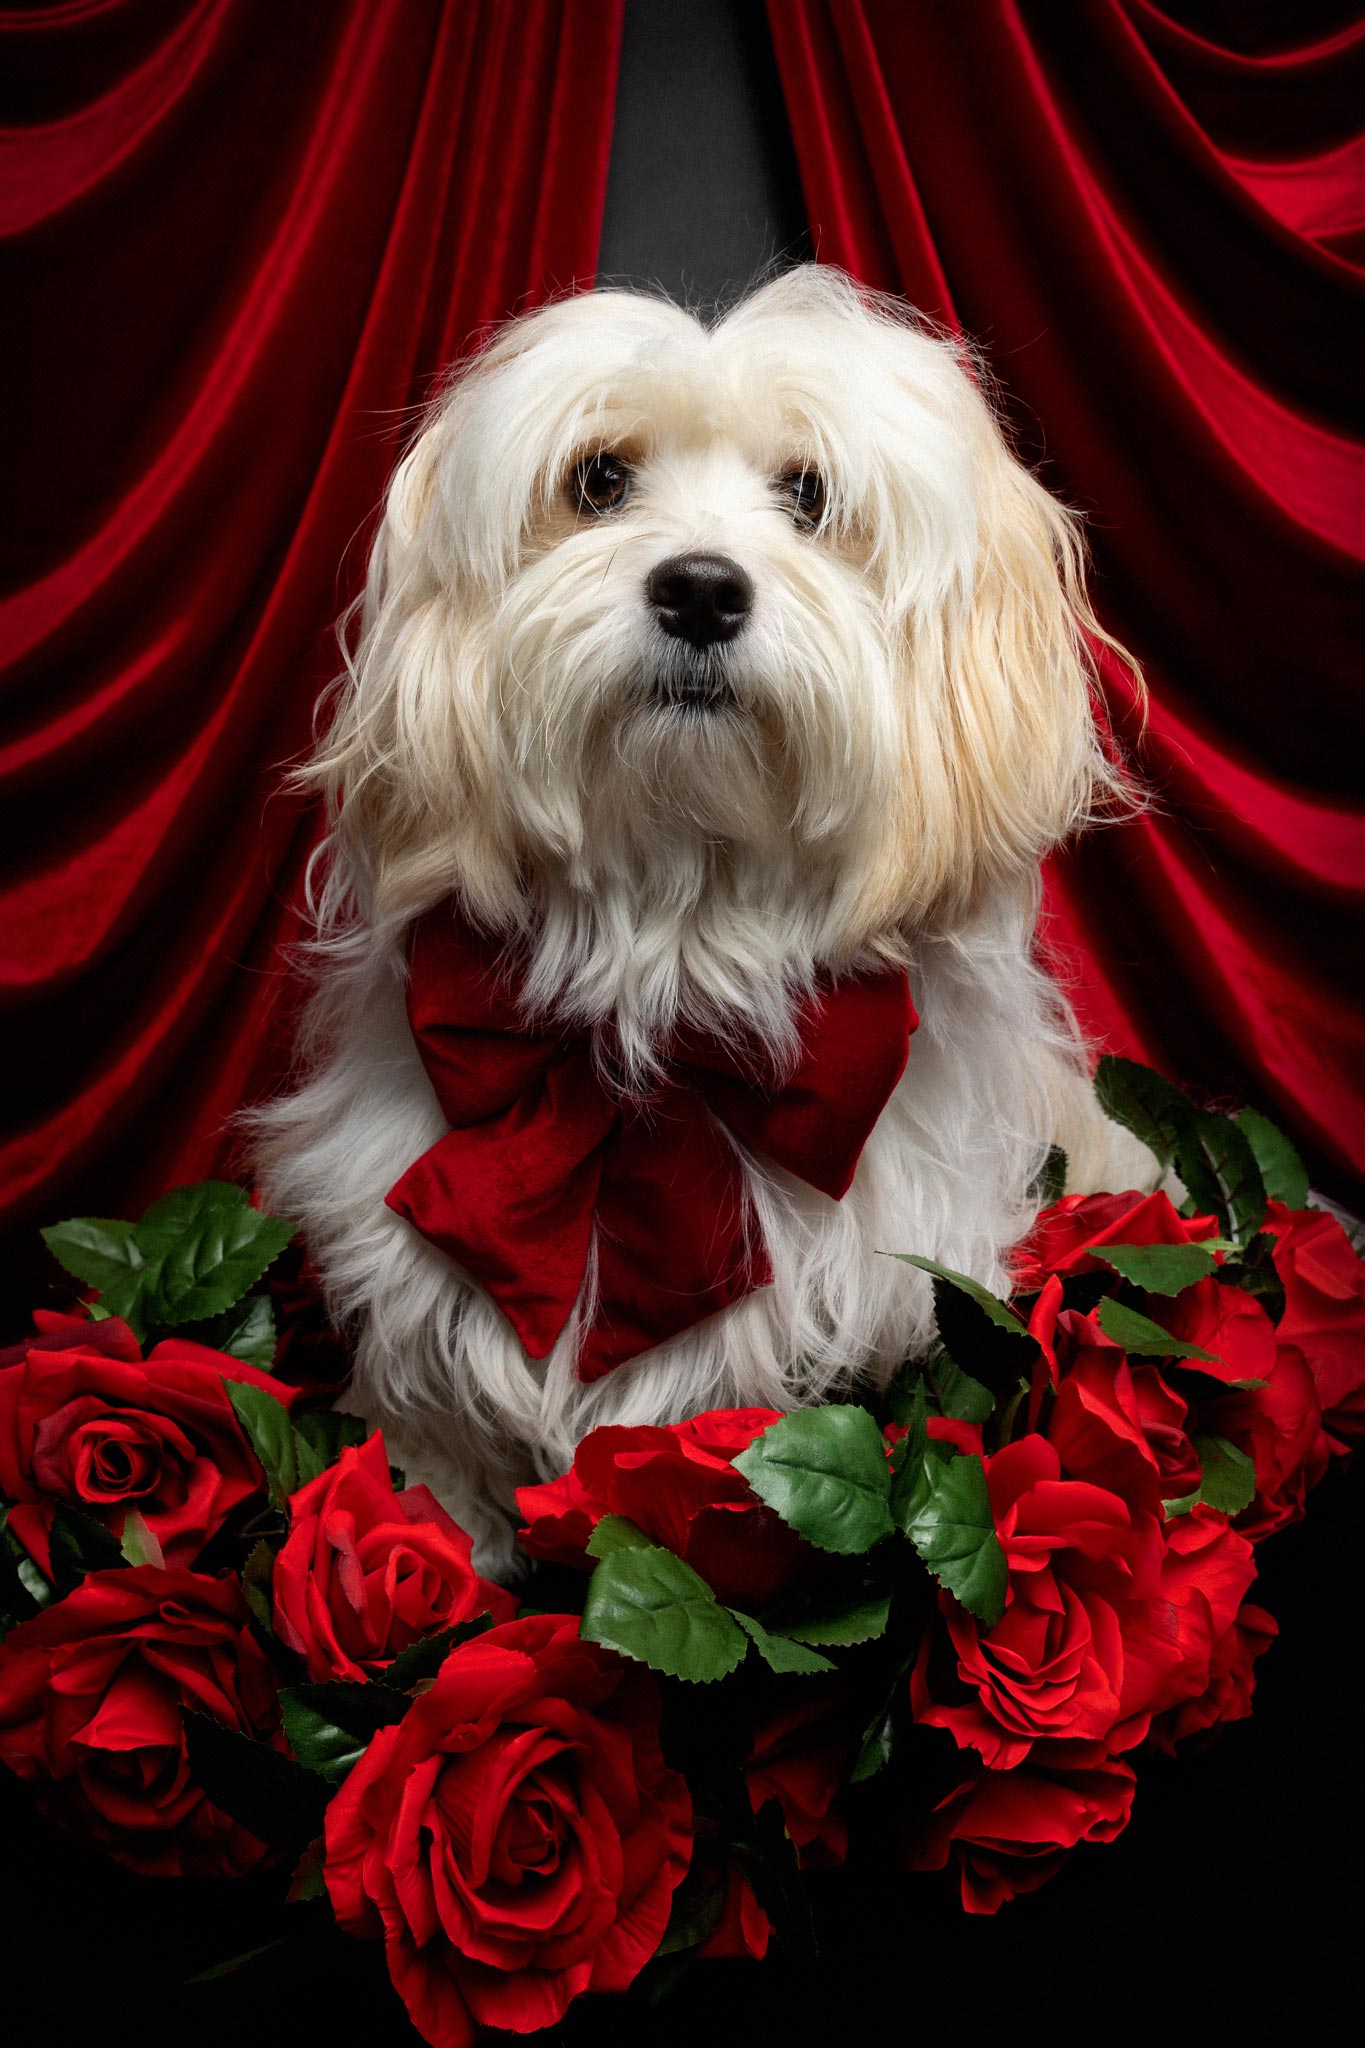 Ein kleiner hund umrahmt von roten Rosen